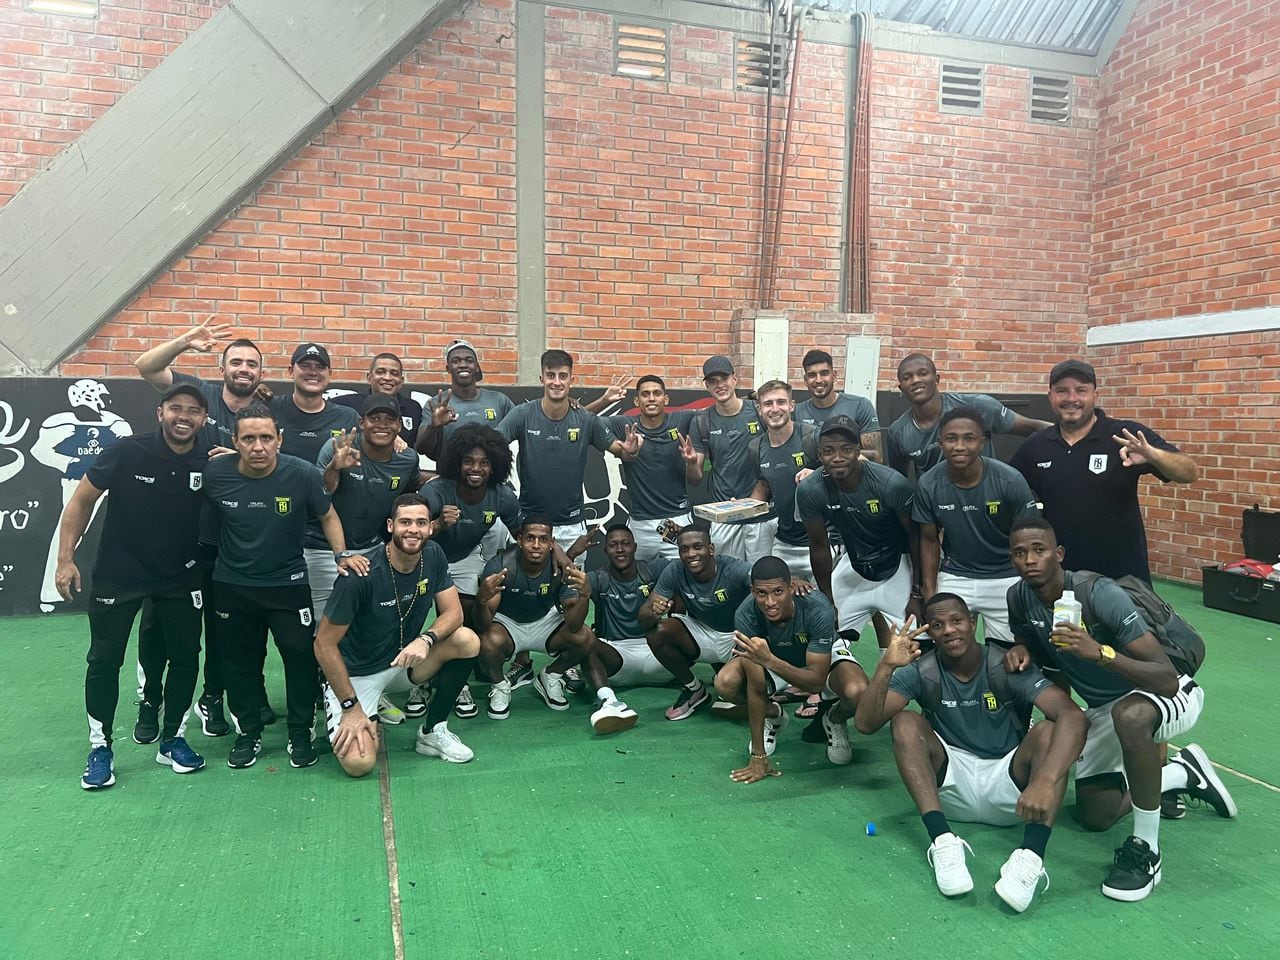 Los jugadores de Internacional FC de Palmira celebraron la victoria ante Llaneros, la primera en su historia deportiva.